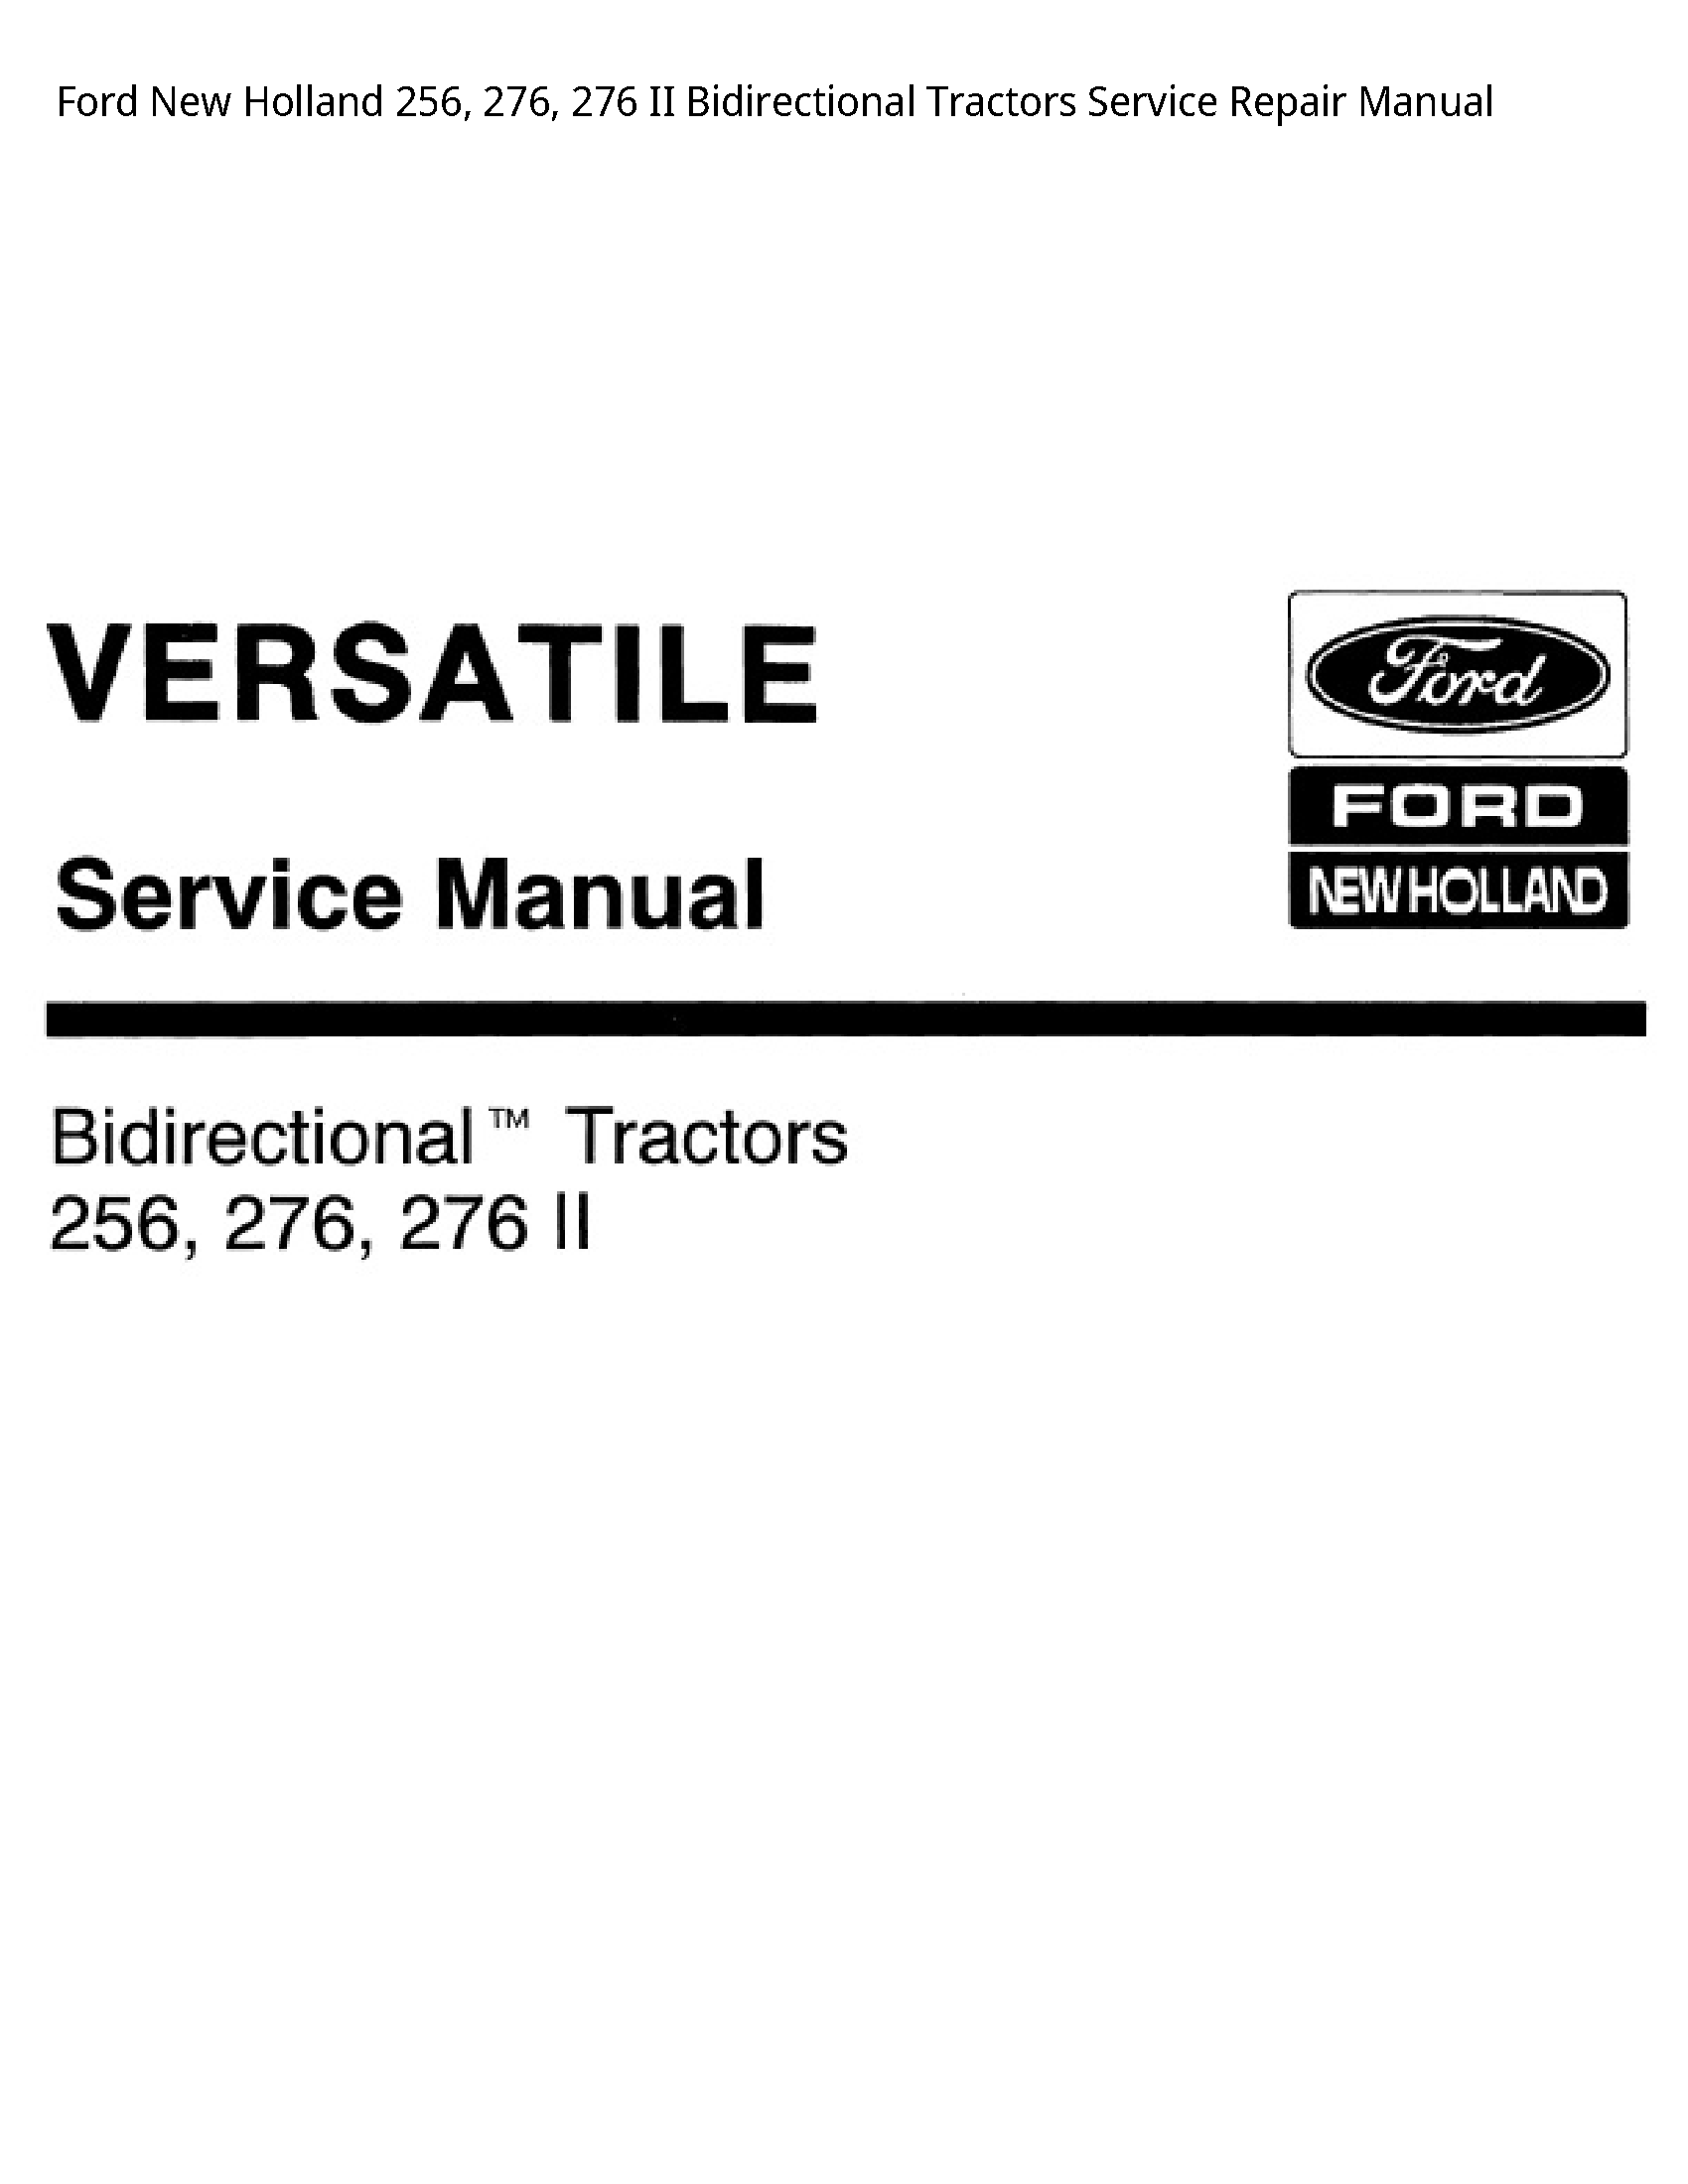  256 II Bidirectional Tractors manual